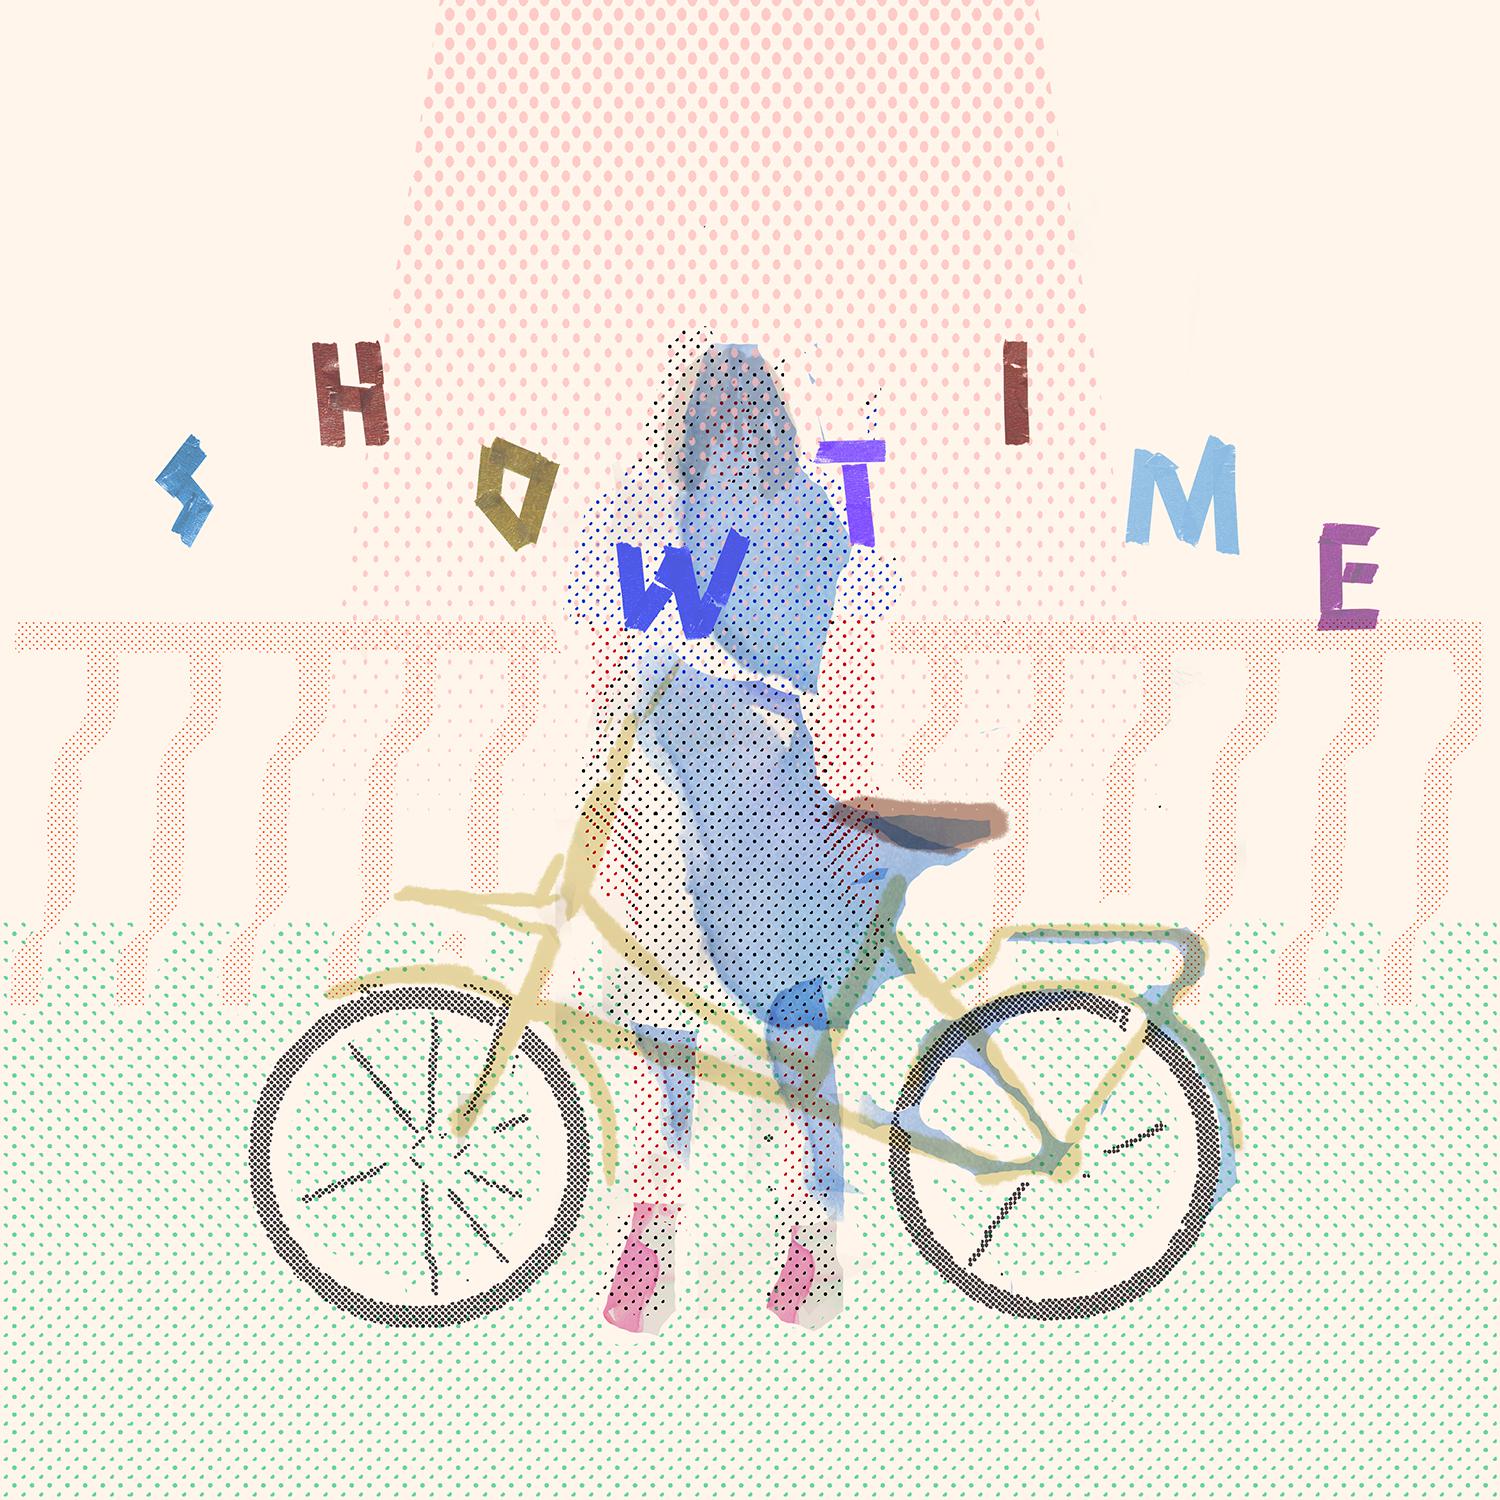 showtime歌词 歌手芝麻和棉花糖-专辑showtime-单曲《showtime》LRC歌词下载